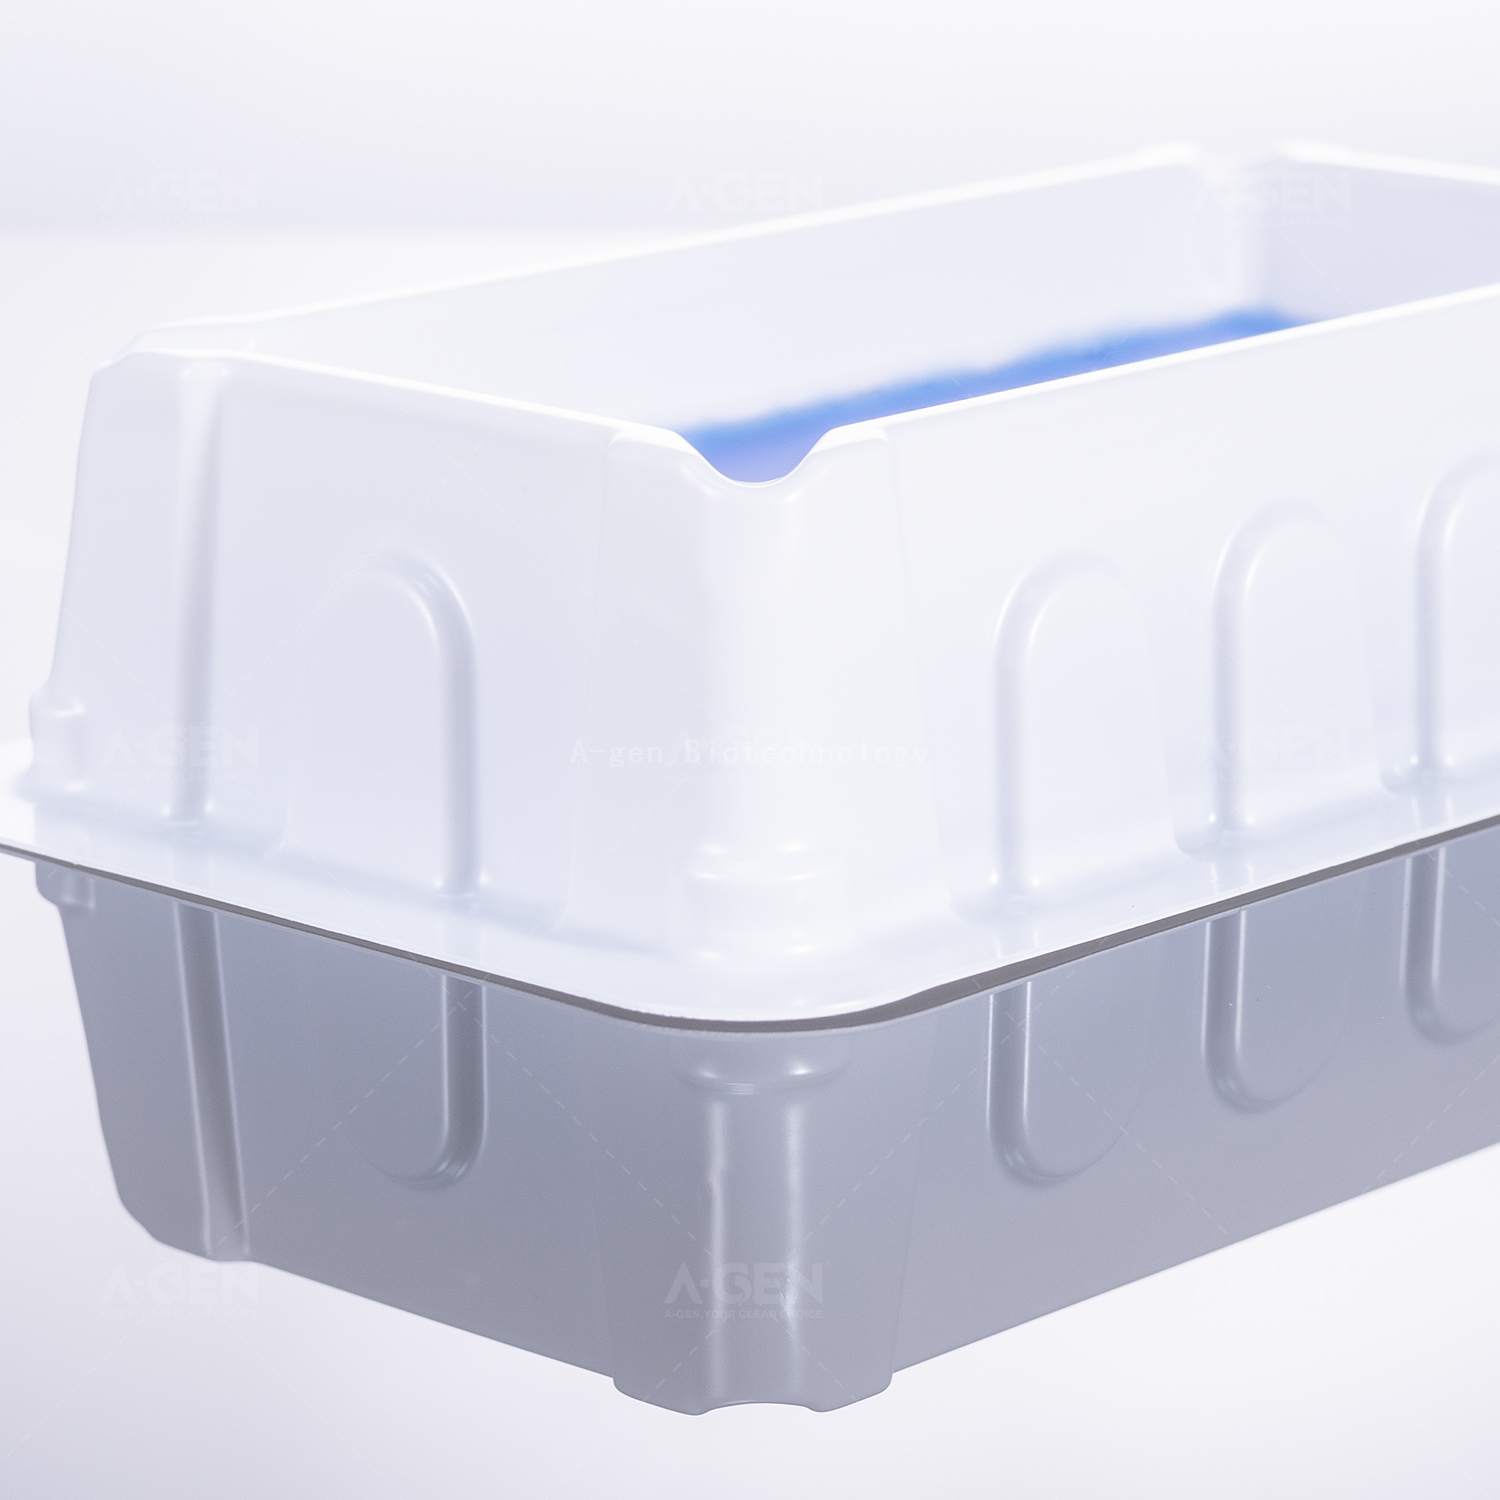 100mlPS储液槽RES-PS100试剂槽不同包装方式无菌可选